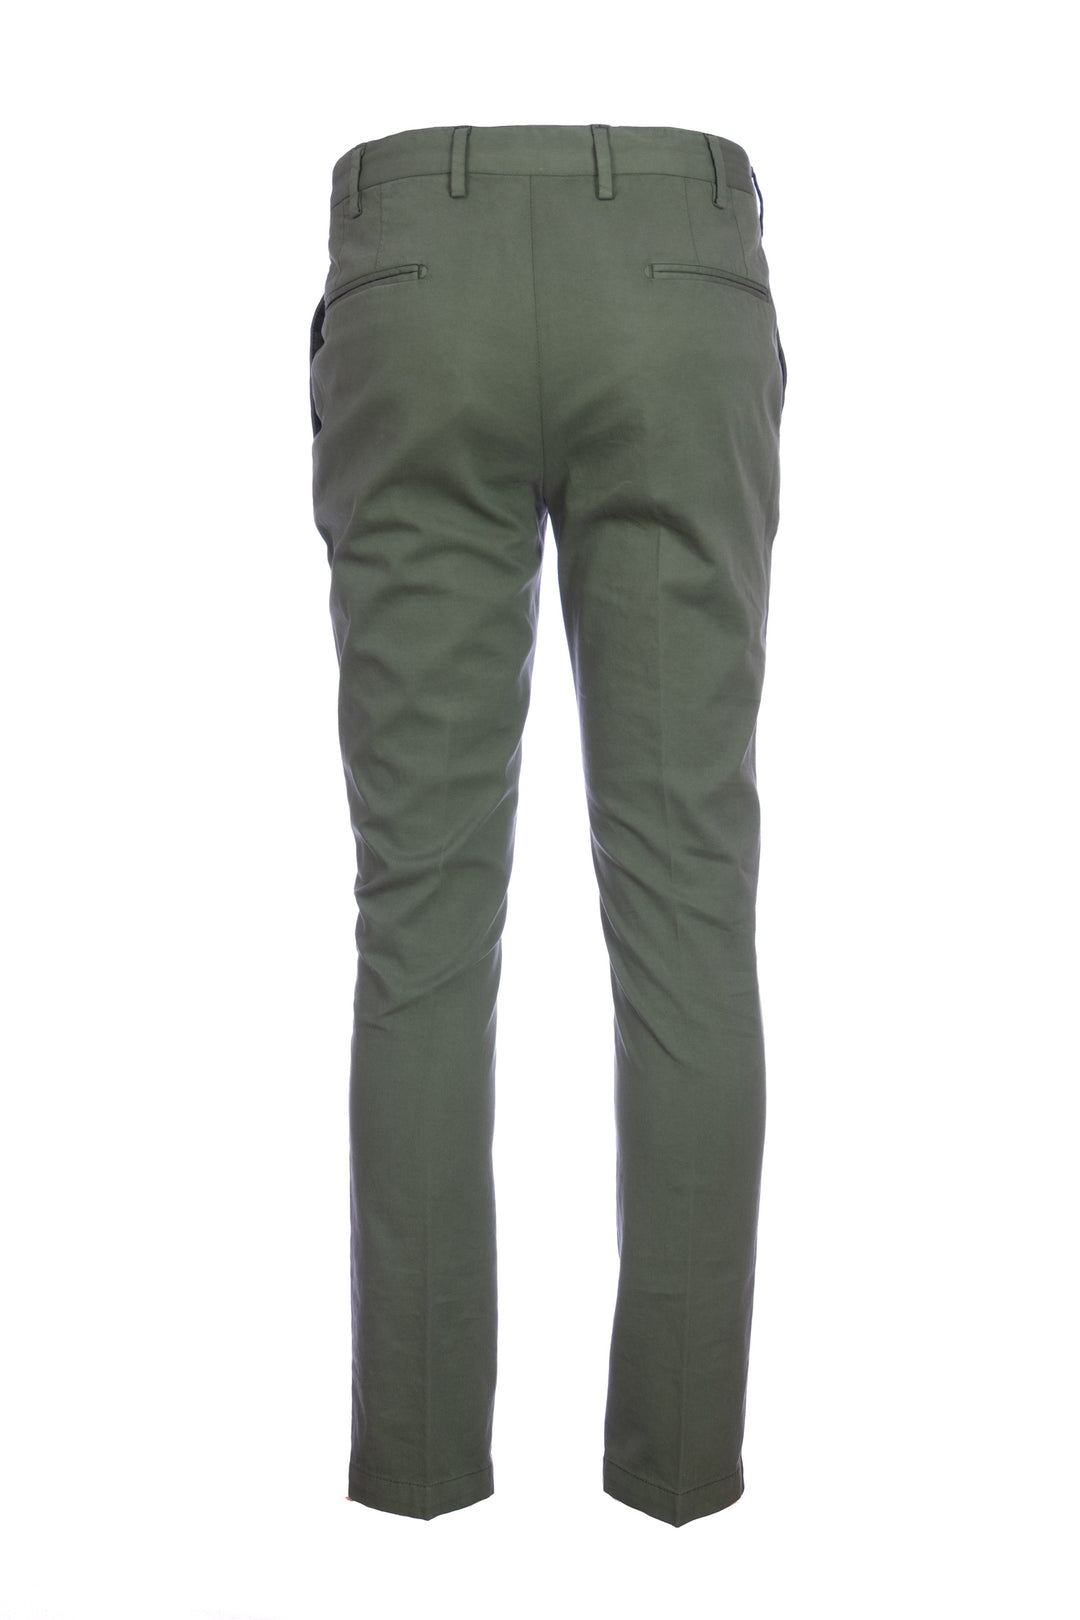 DEVORE Pantalone verde militare in cotone stretch con vita elastica - Mancinelli 1954